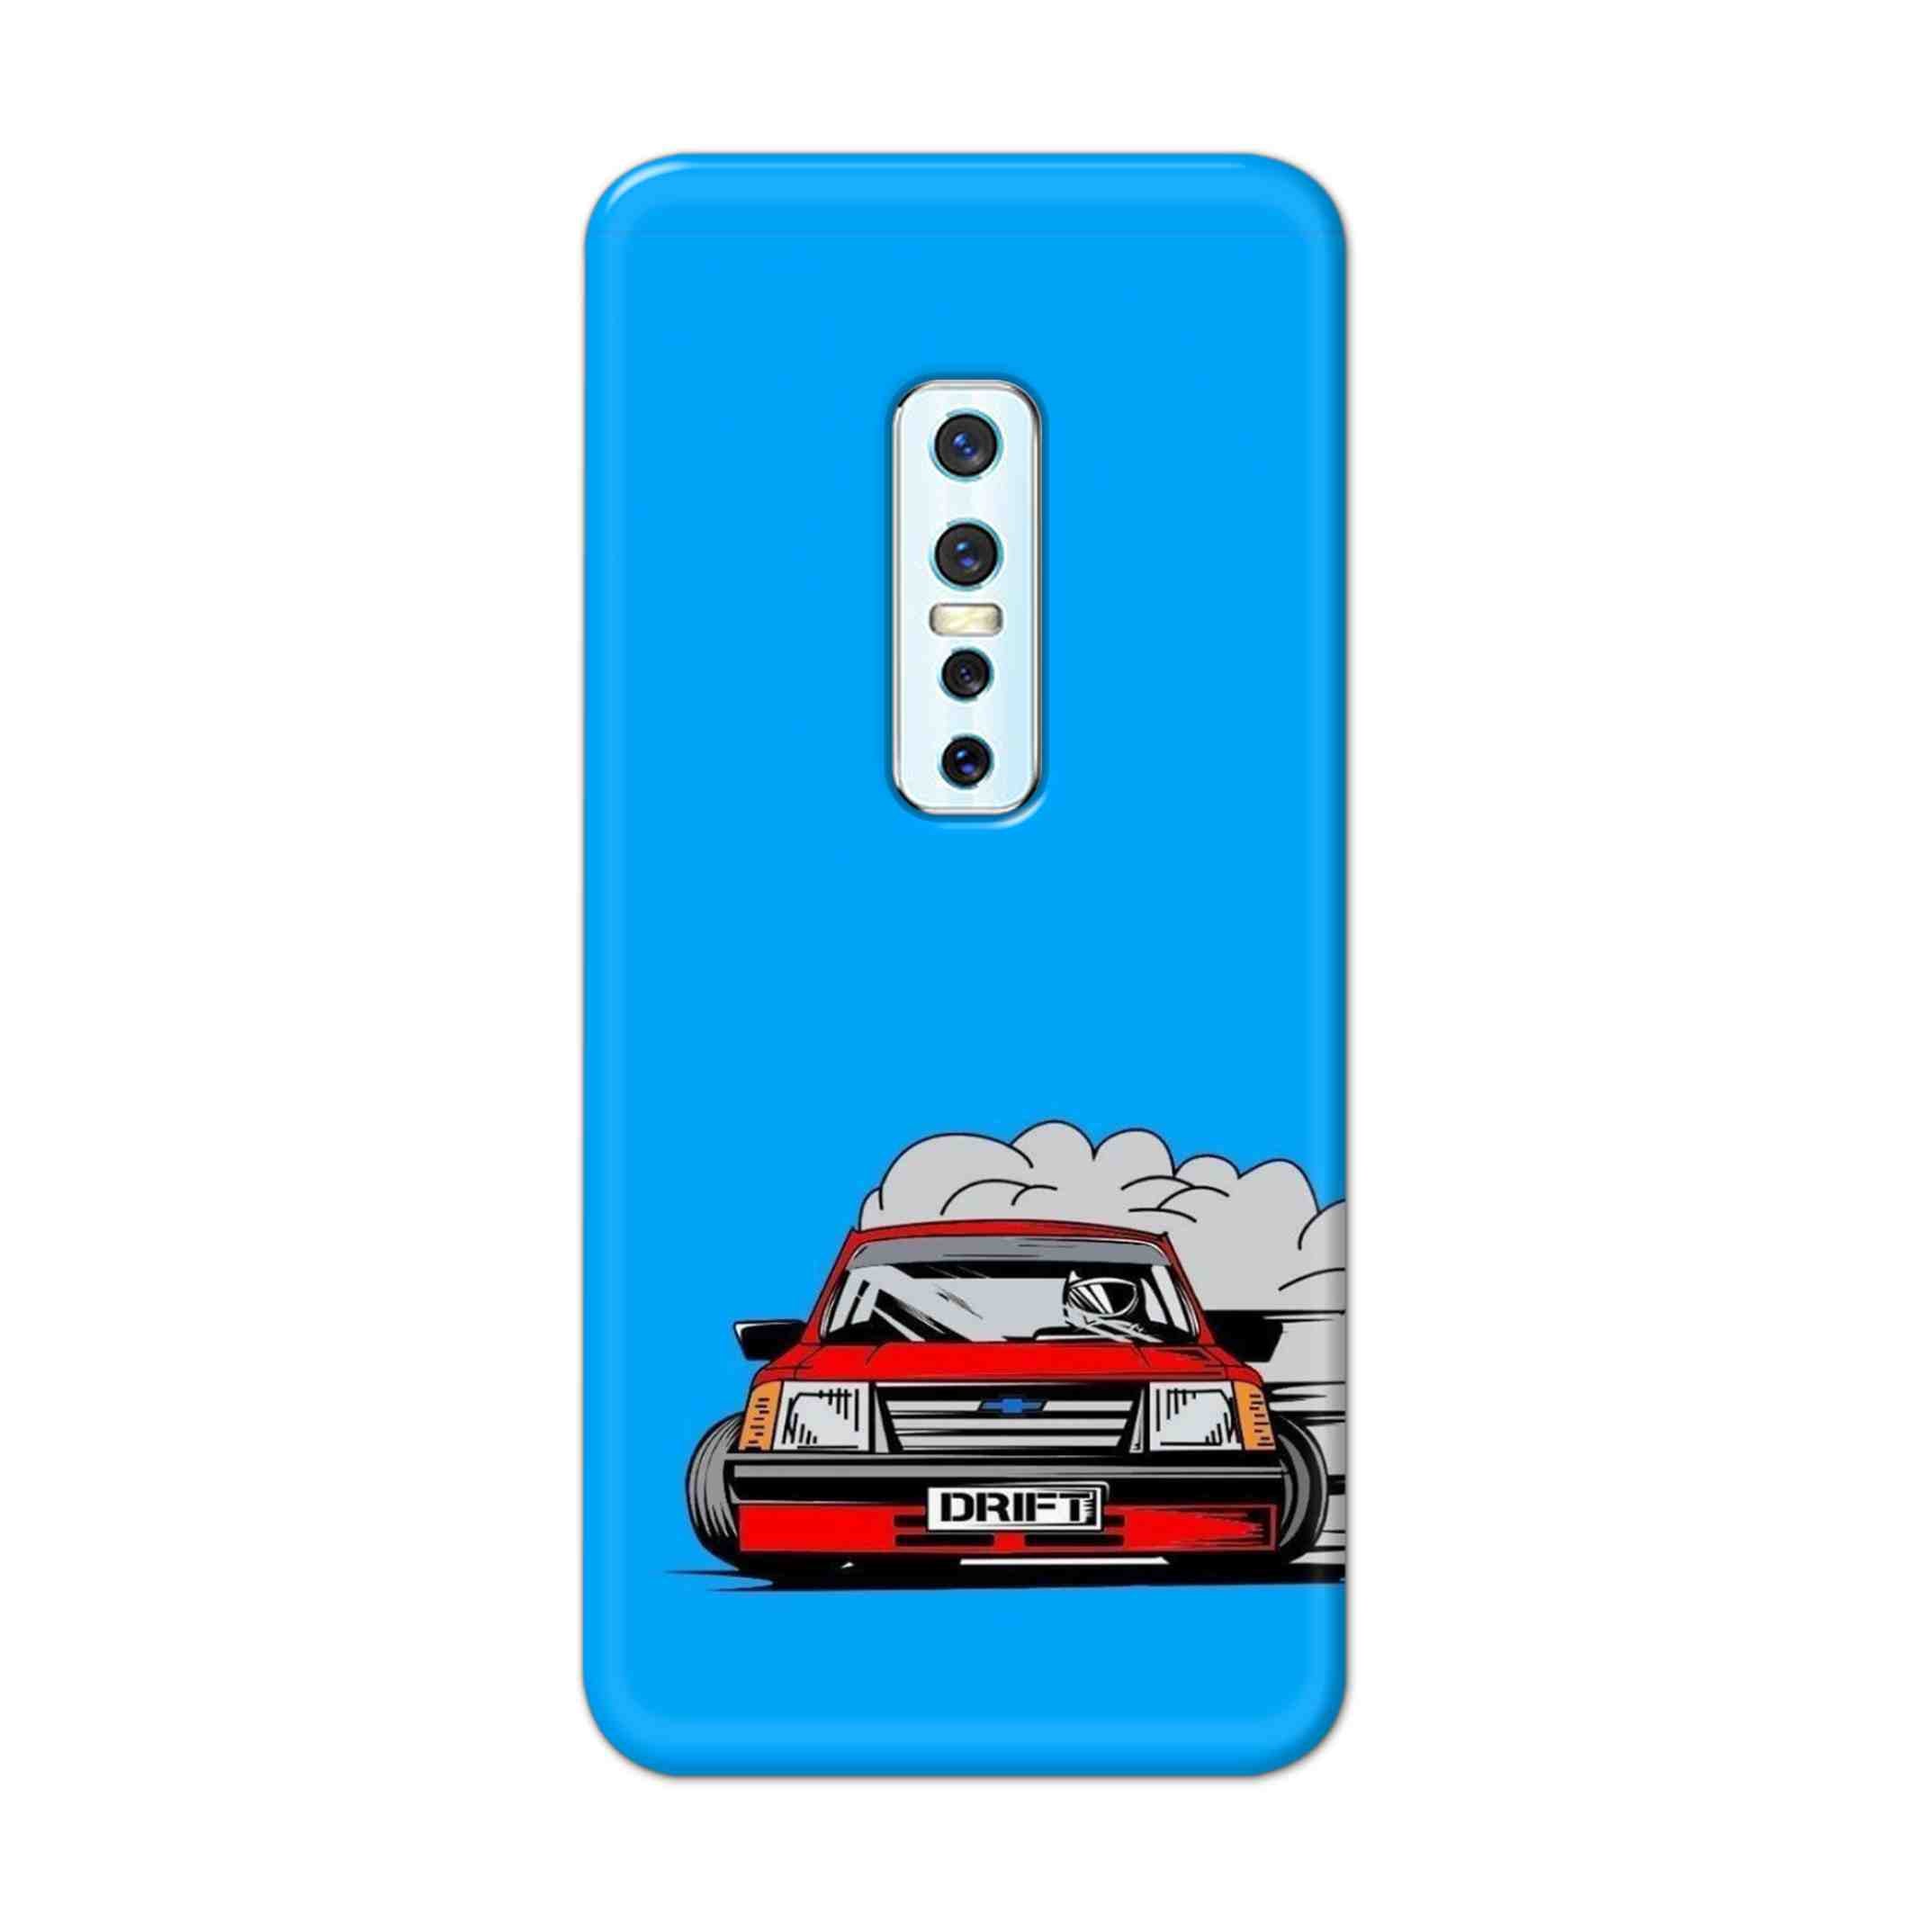 Buy Drift Hard Back Mobile Phone Case Cover For Vivo V17 Pro Online